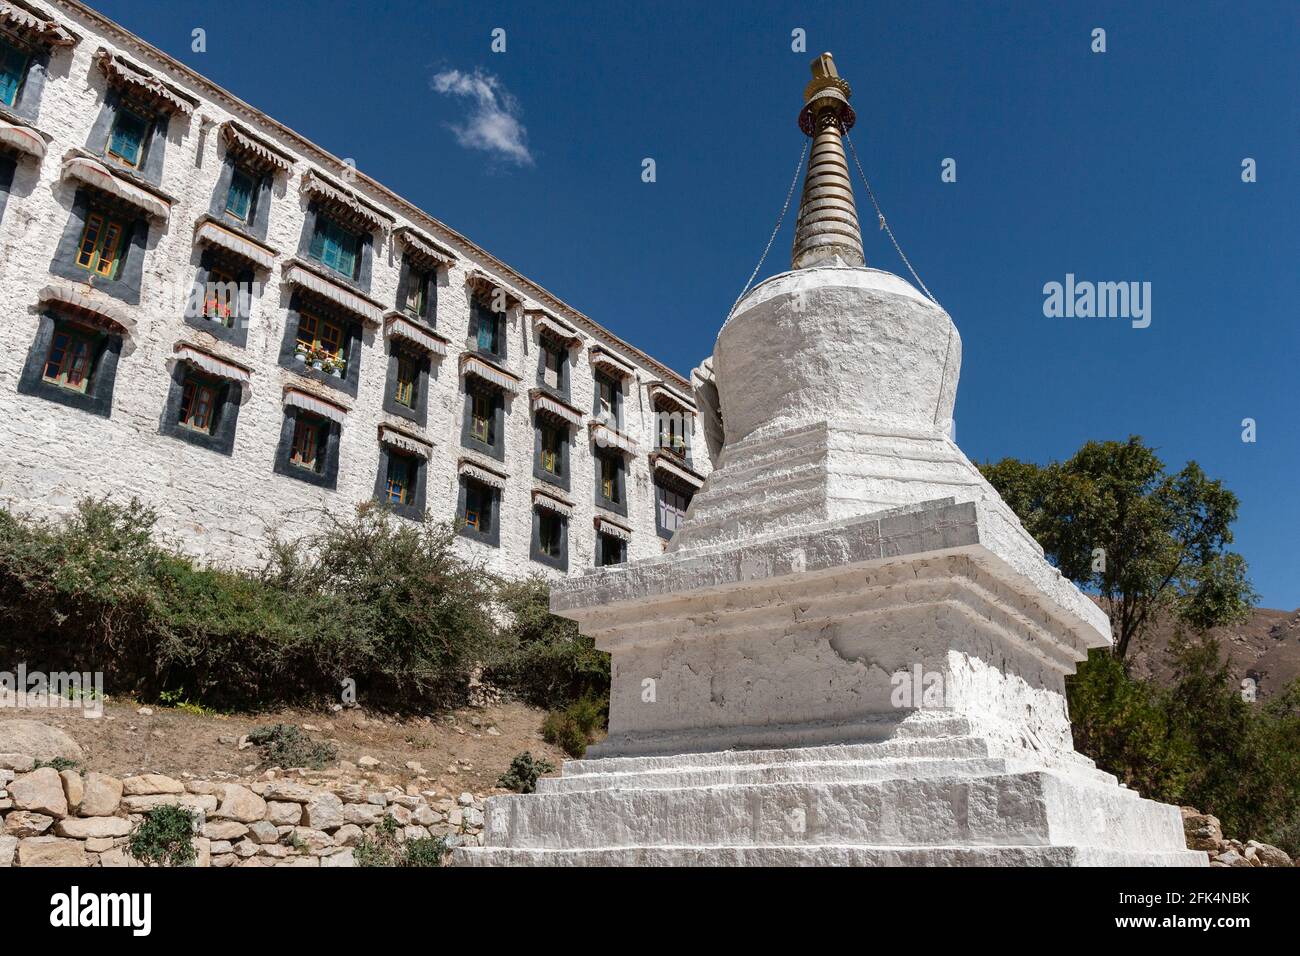 Monastère bouddhiste de Drepung près de Lhassa dans la région autonome du Tibet en Chine. Un des "trois grands" Gelug université gompas (monastères) du Tibet Banque D'Images